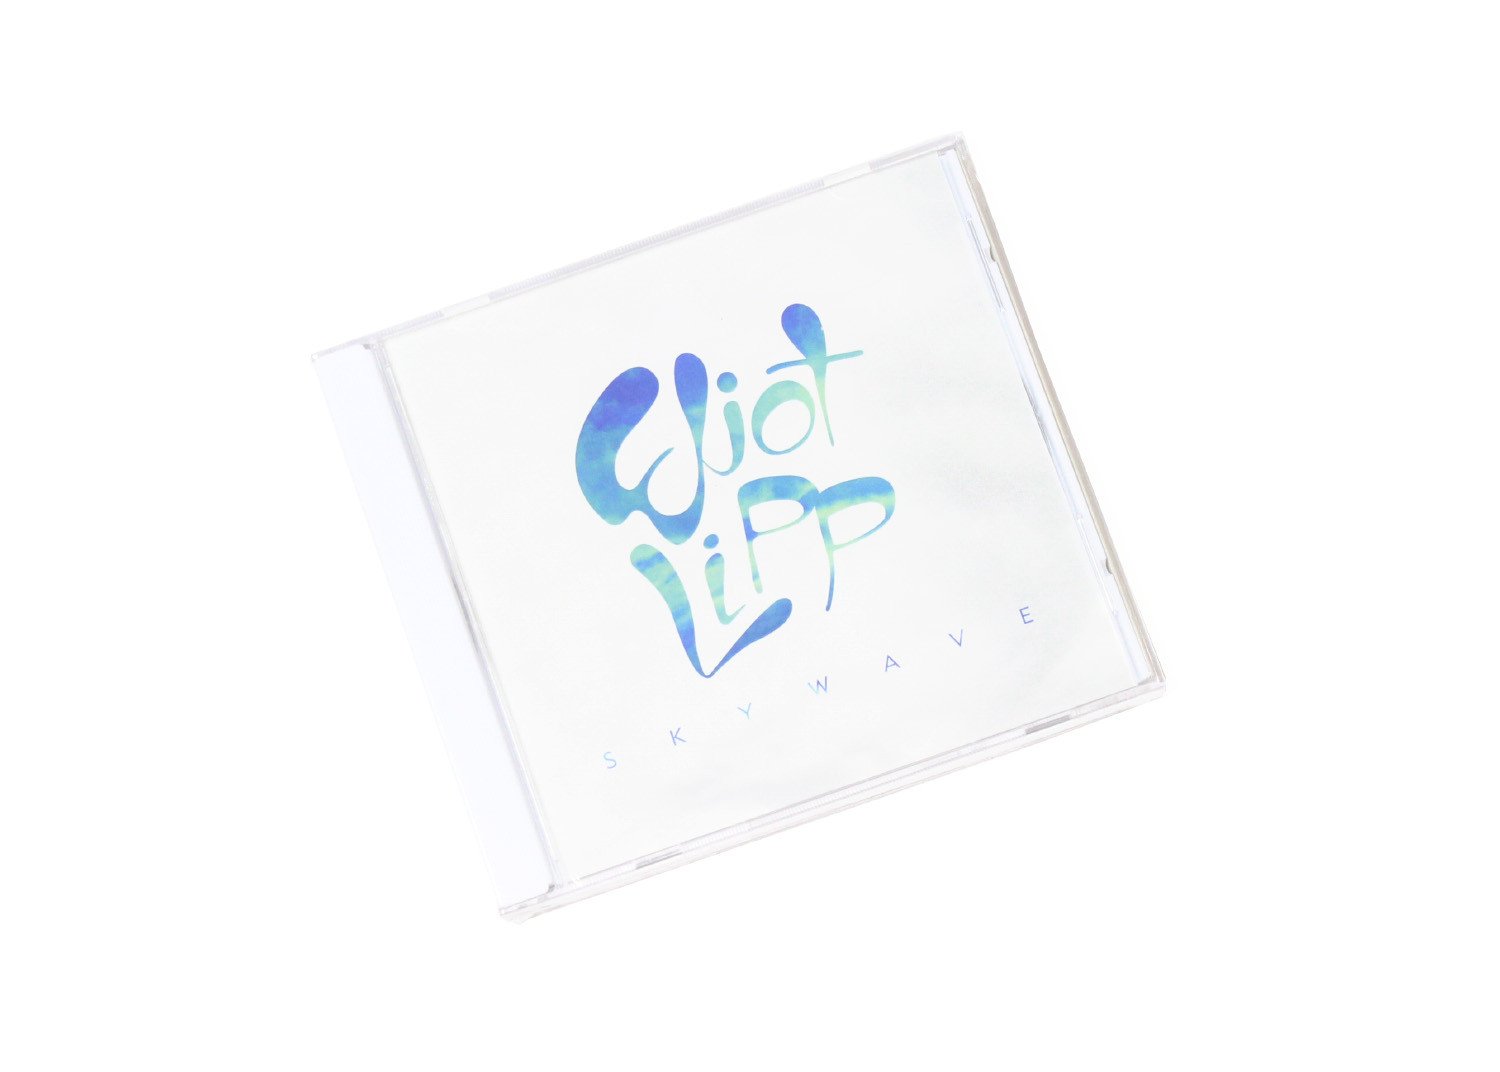 Eliot Lipp - Skywave (CD) – $8.00